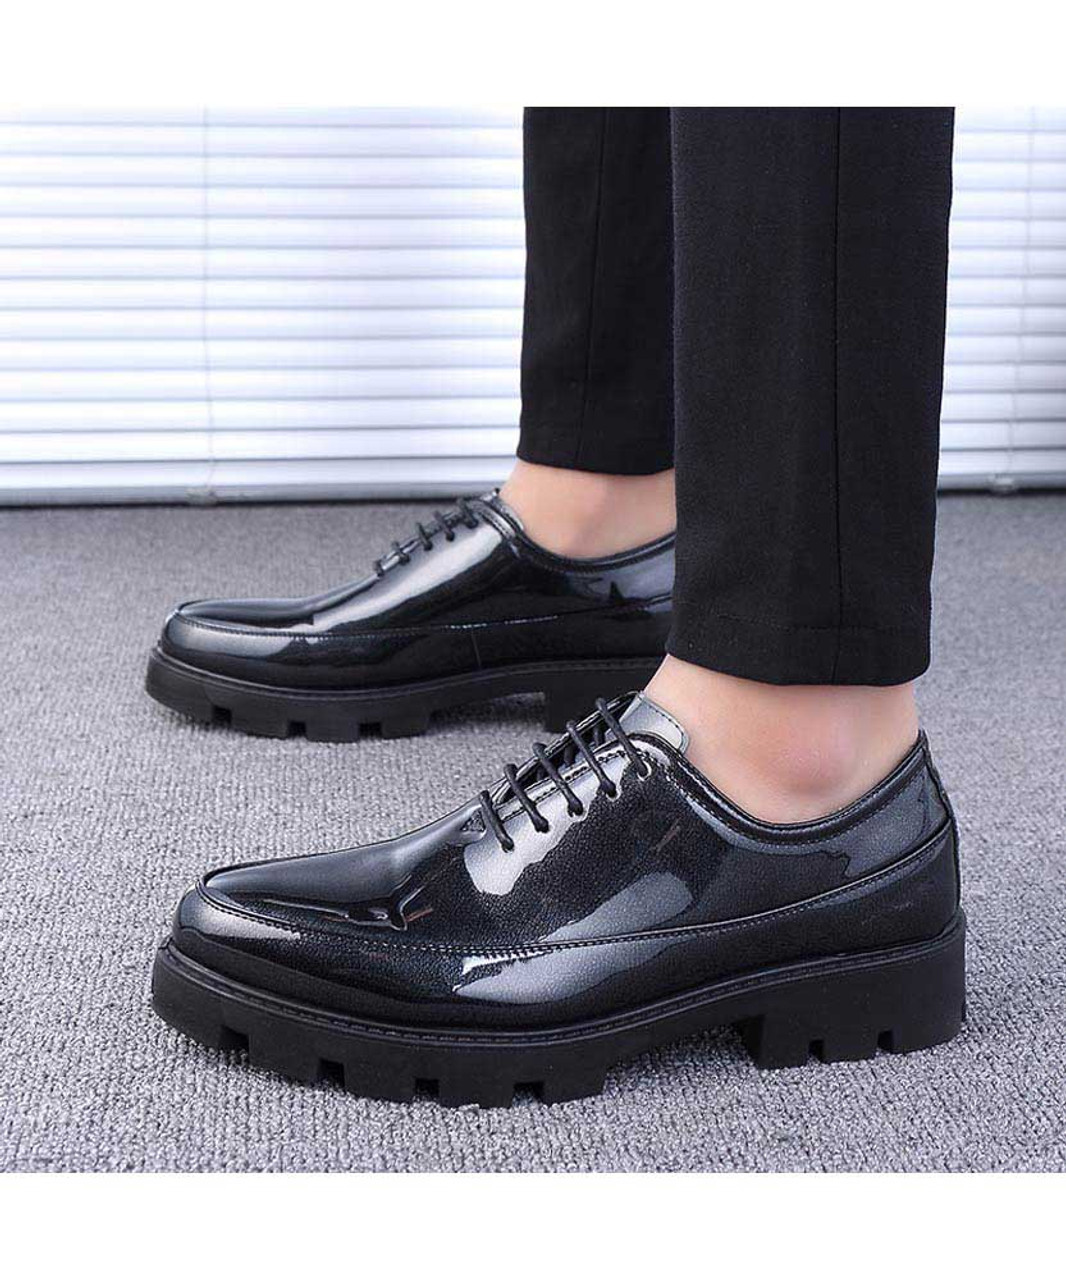 Black plain patent leather oxford dress shoe | Mens dress shoes online ...